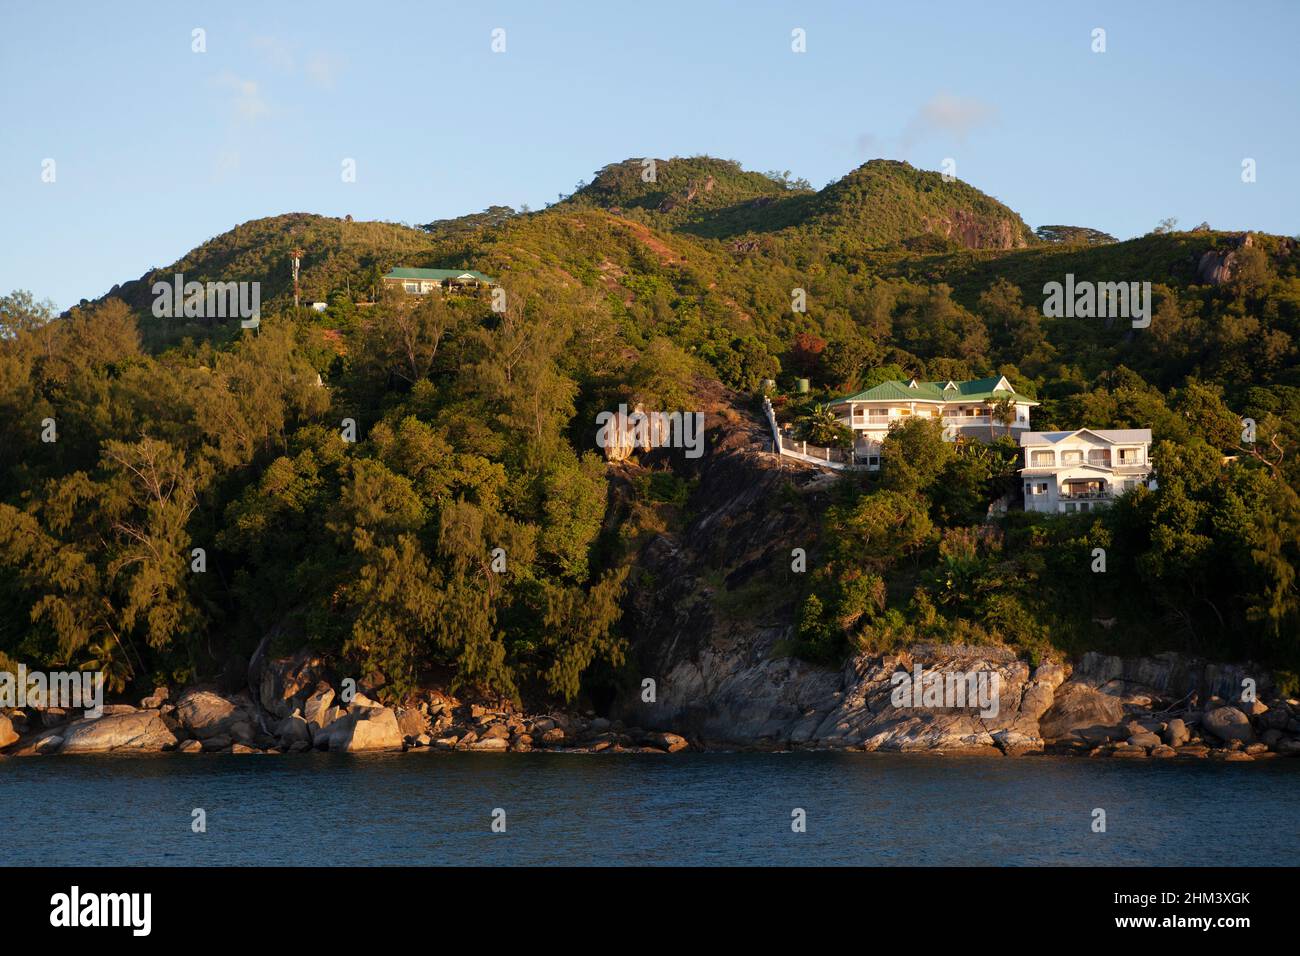 Luxuriöse Häuser am Meer an der Küste von Mahé Island, der Hauptinsel der Seychellen. Stockfoto